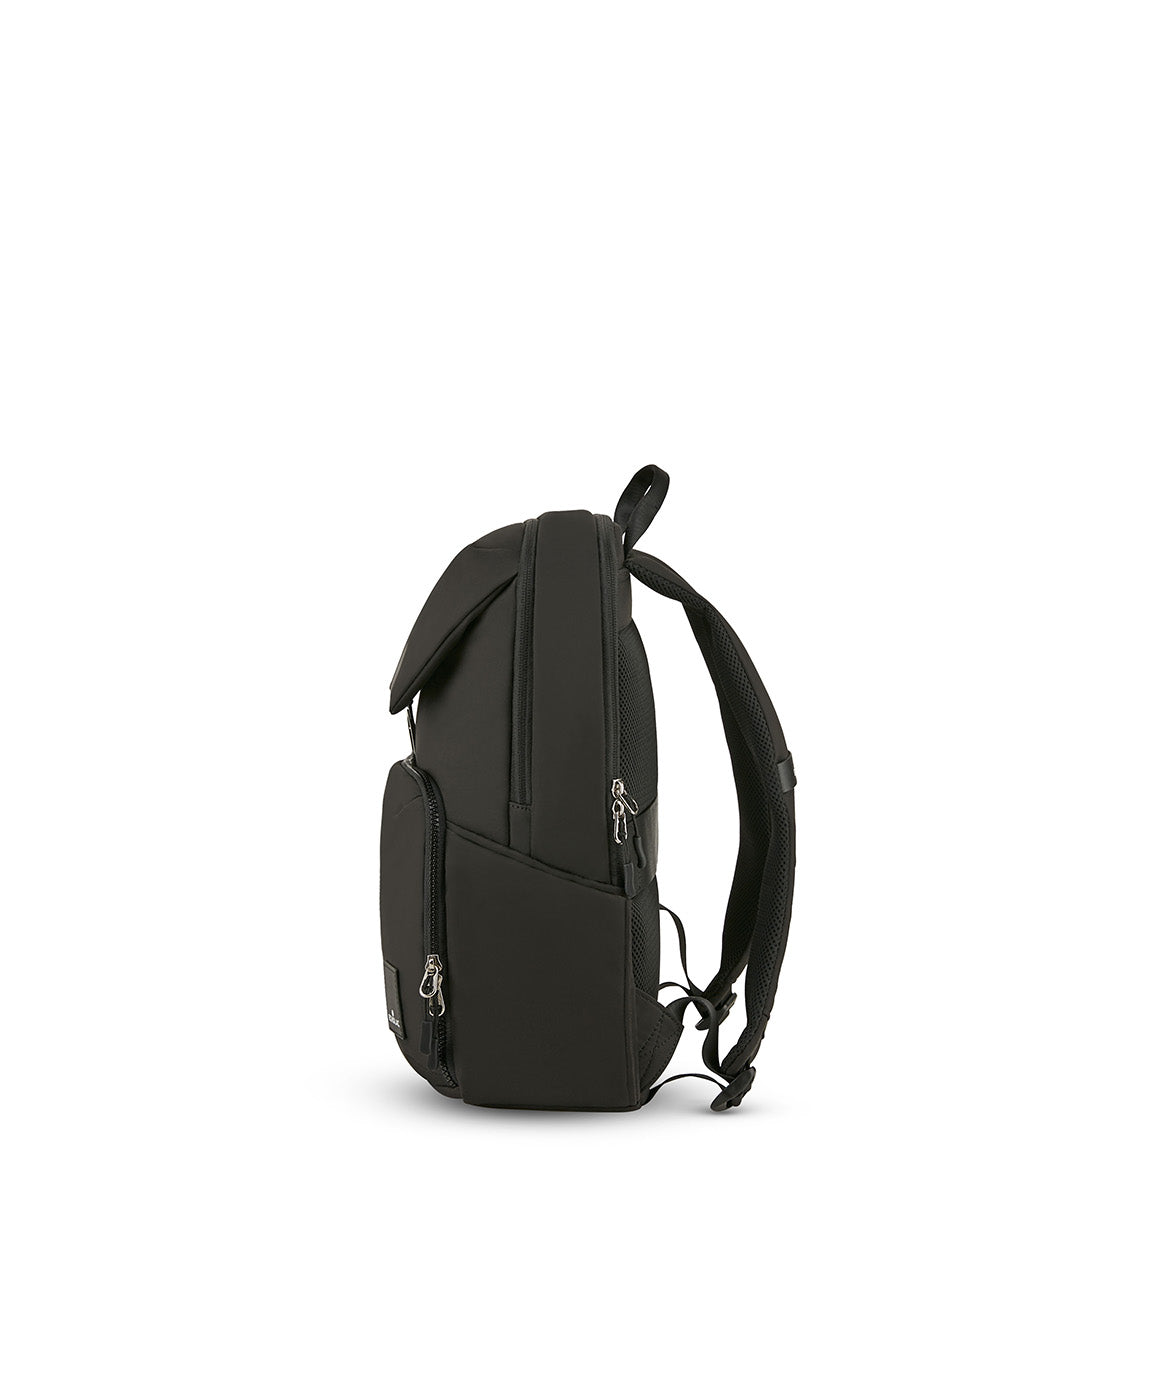 SuperNova Backpack